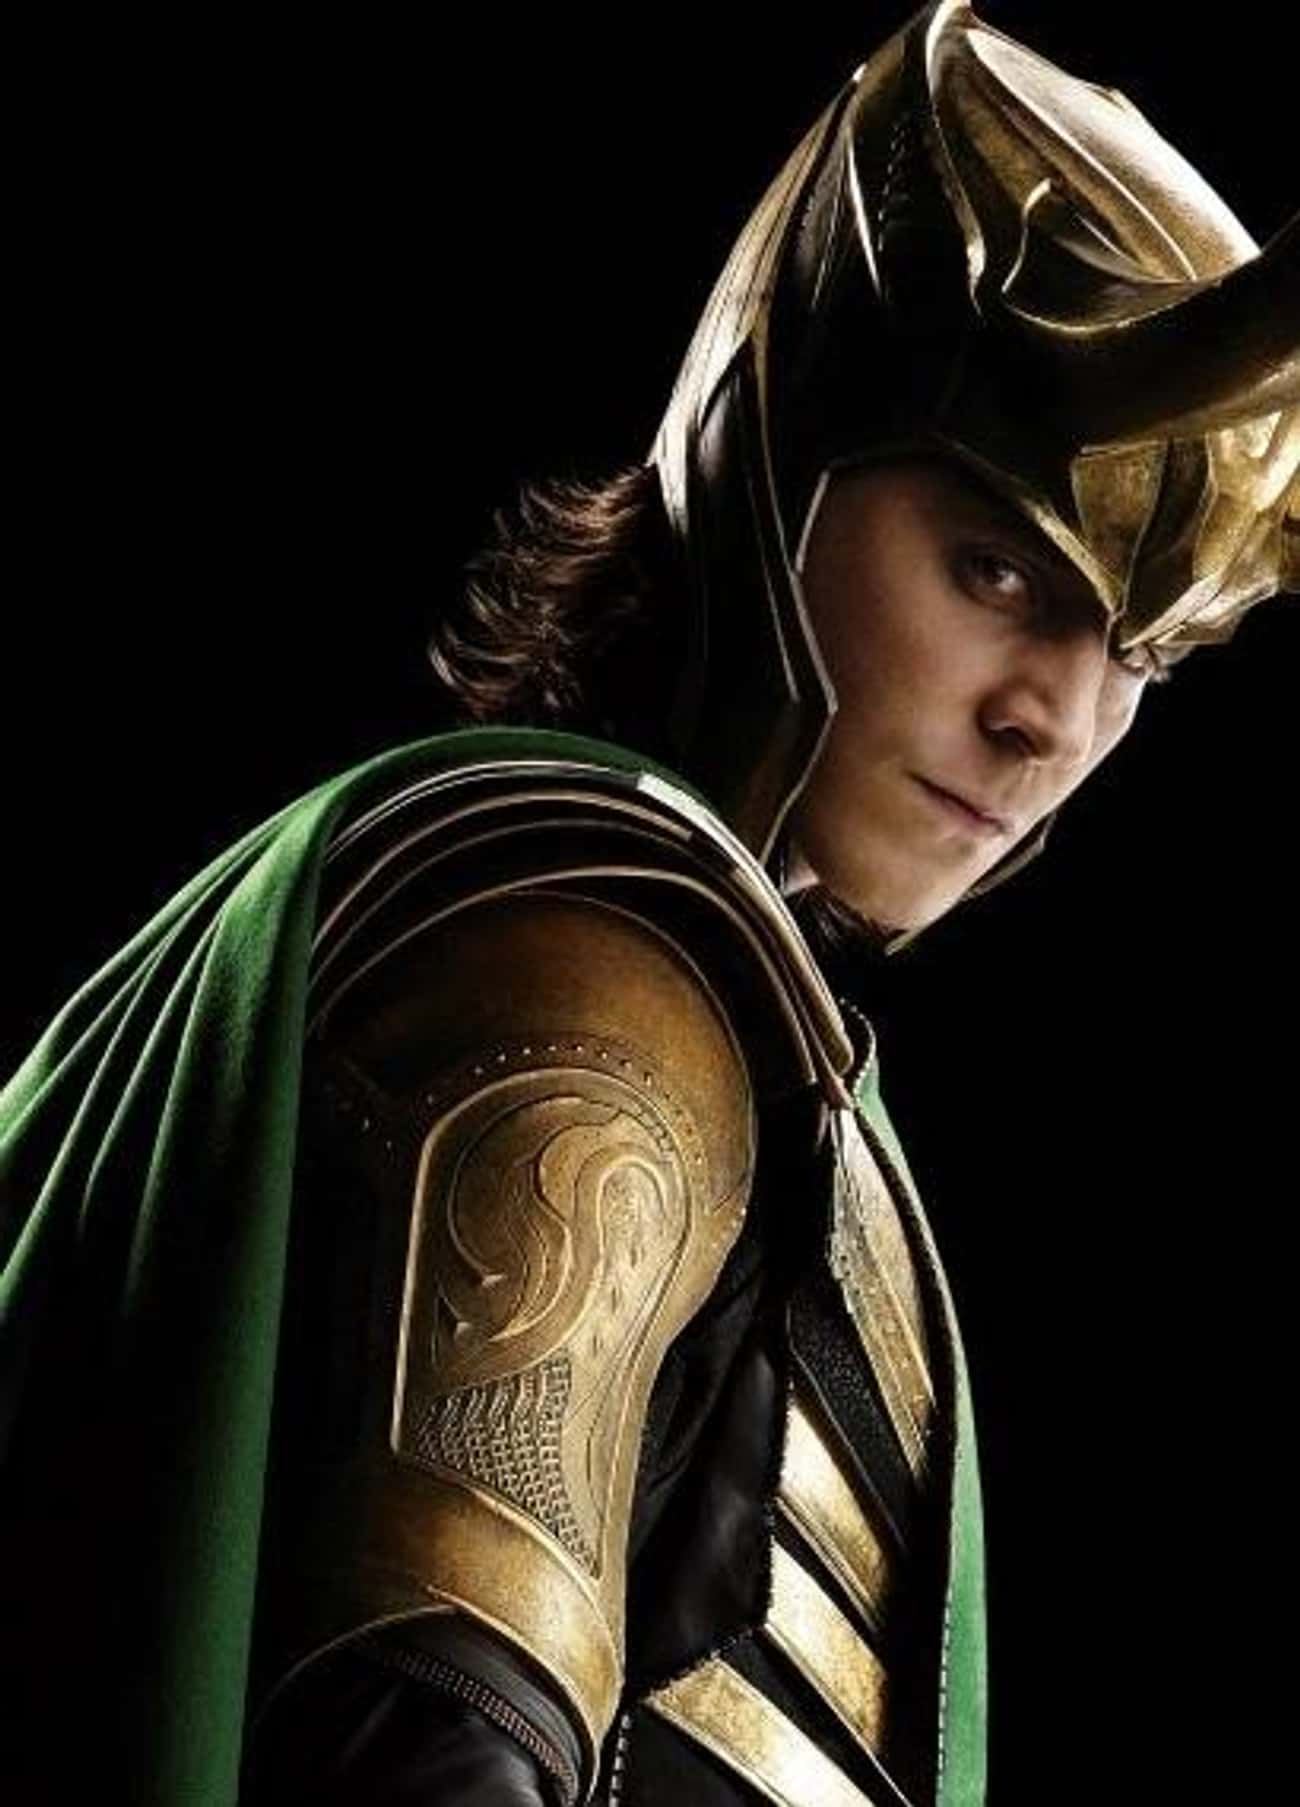 Gemini: Loki